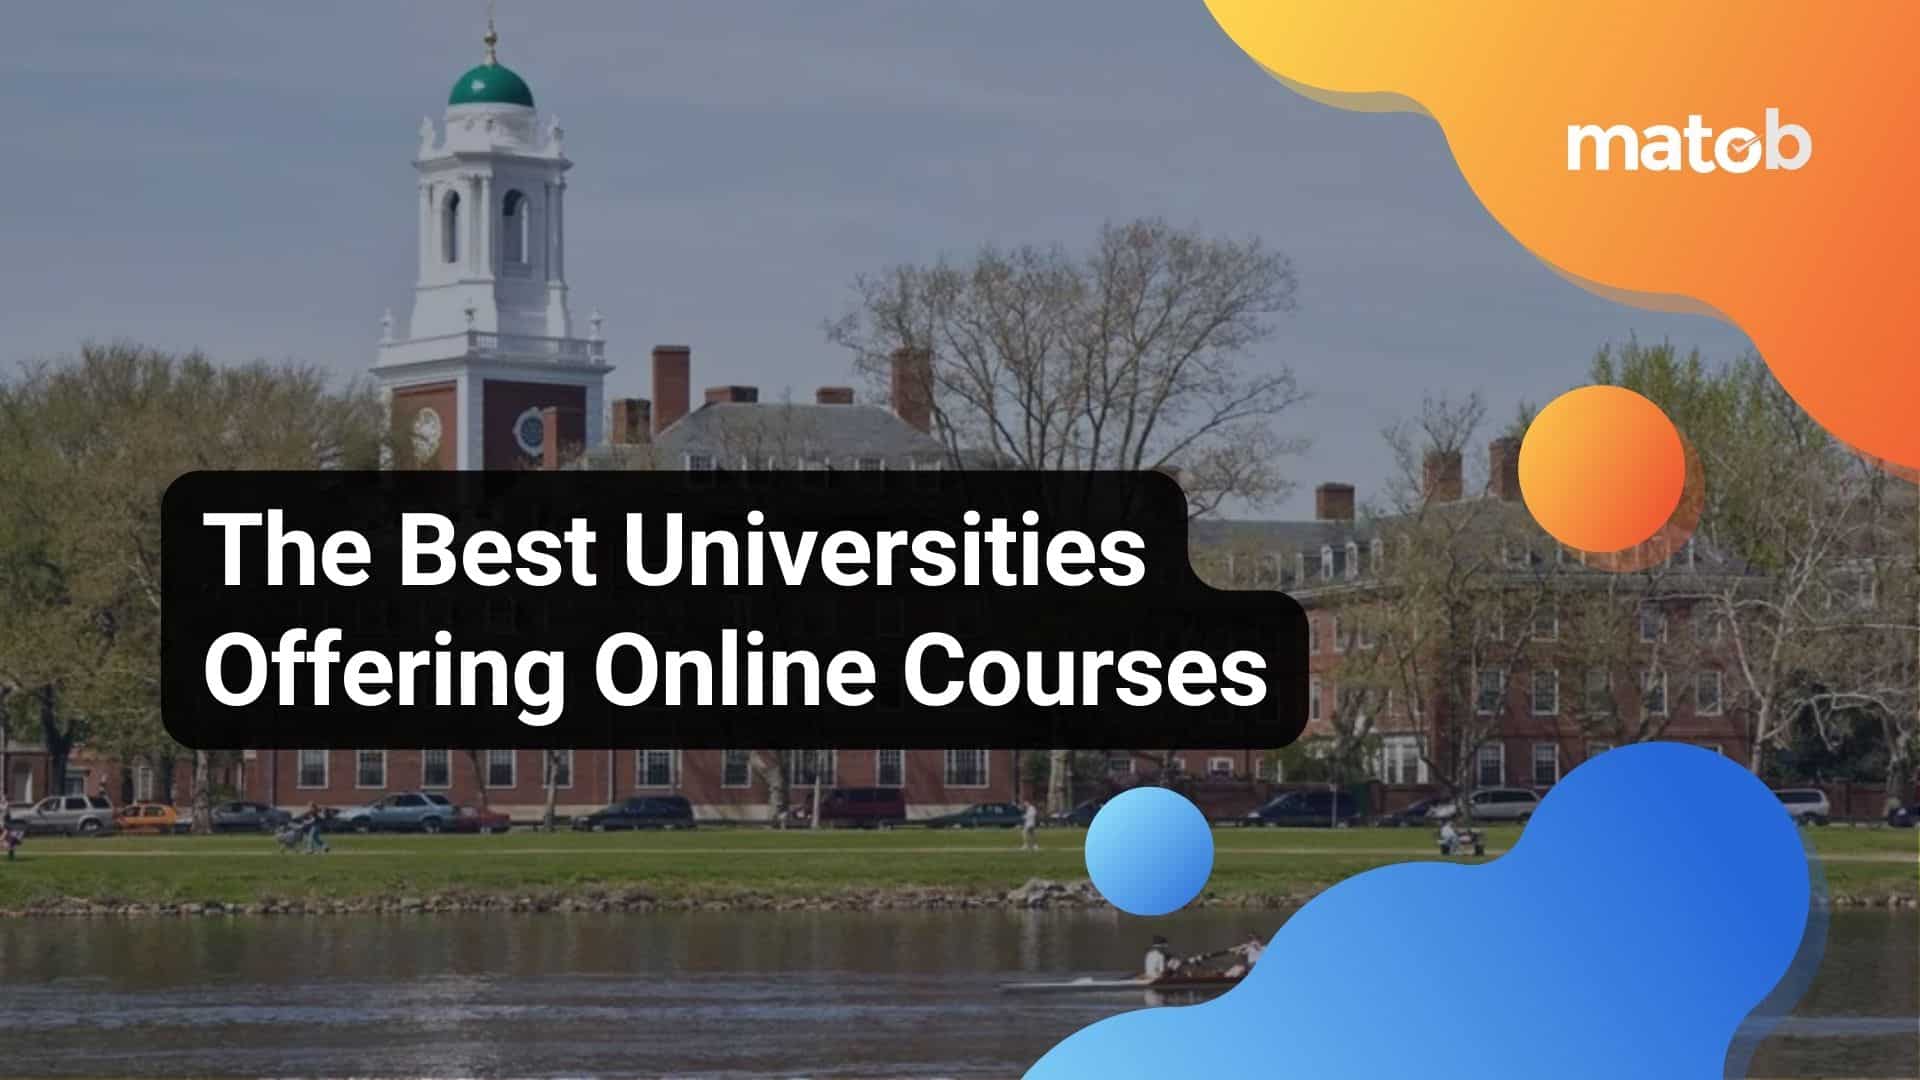 The Best Universities Offering Online Courses